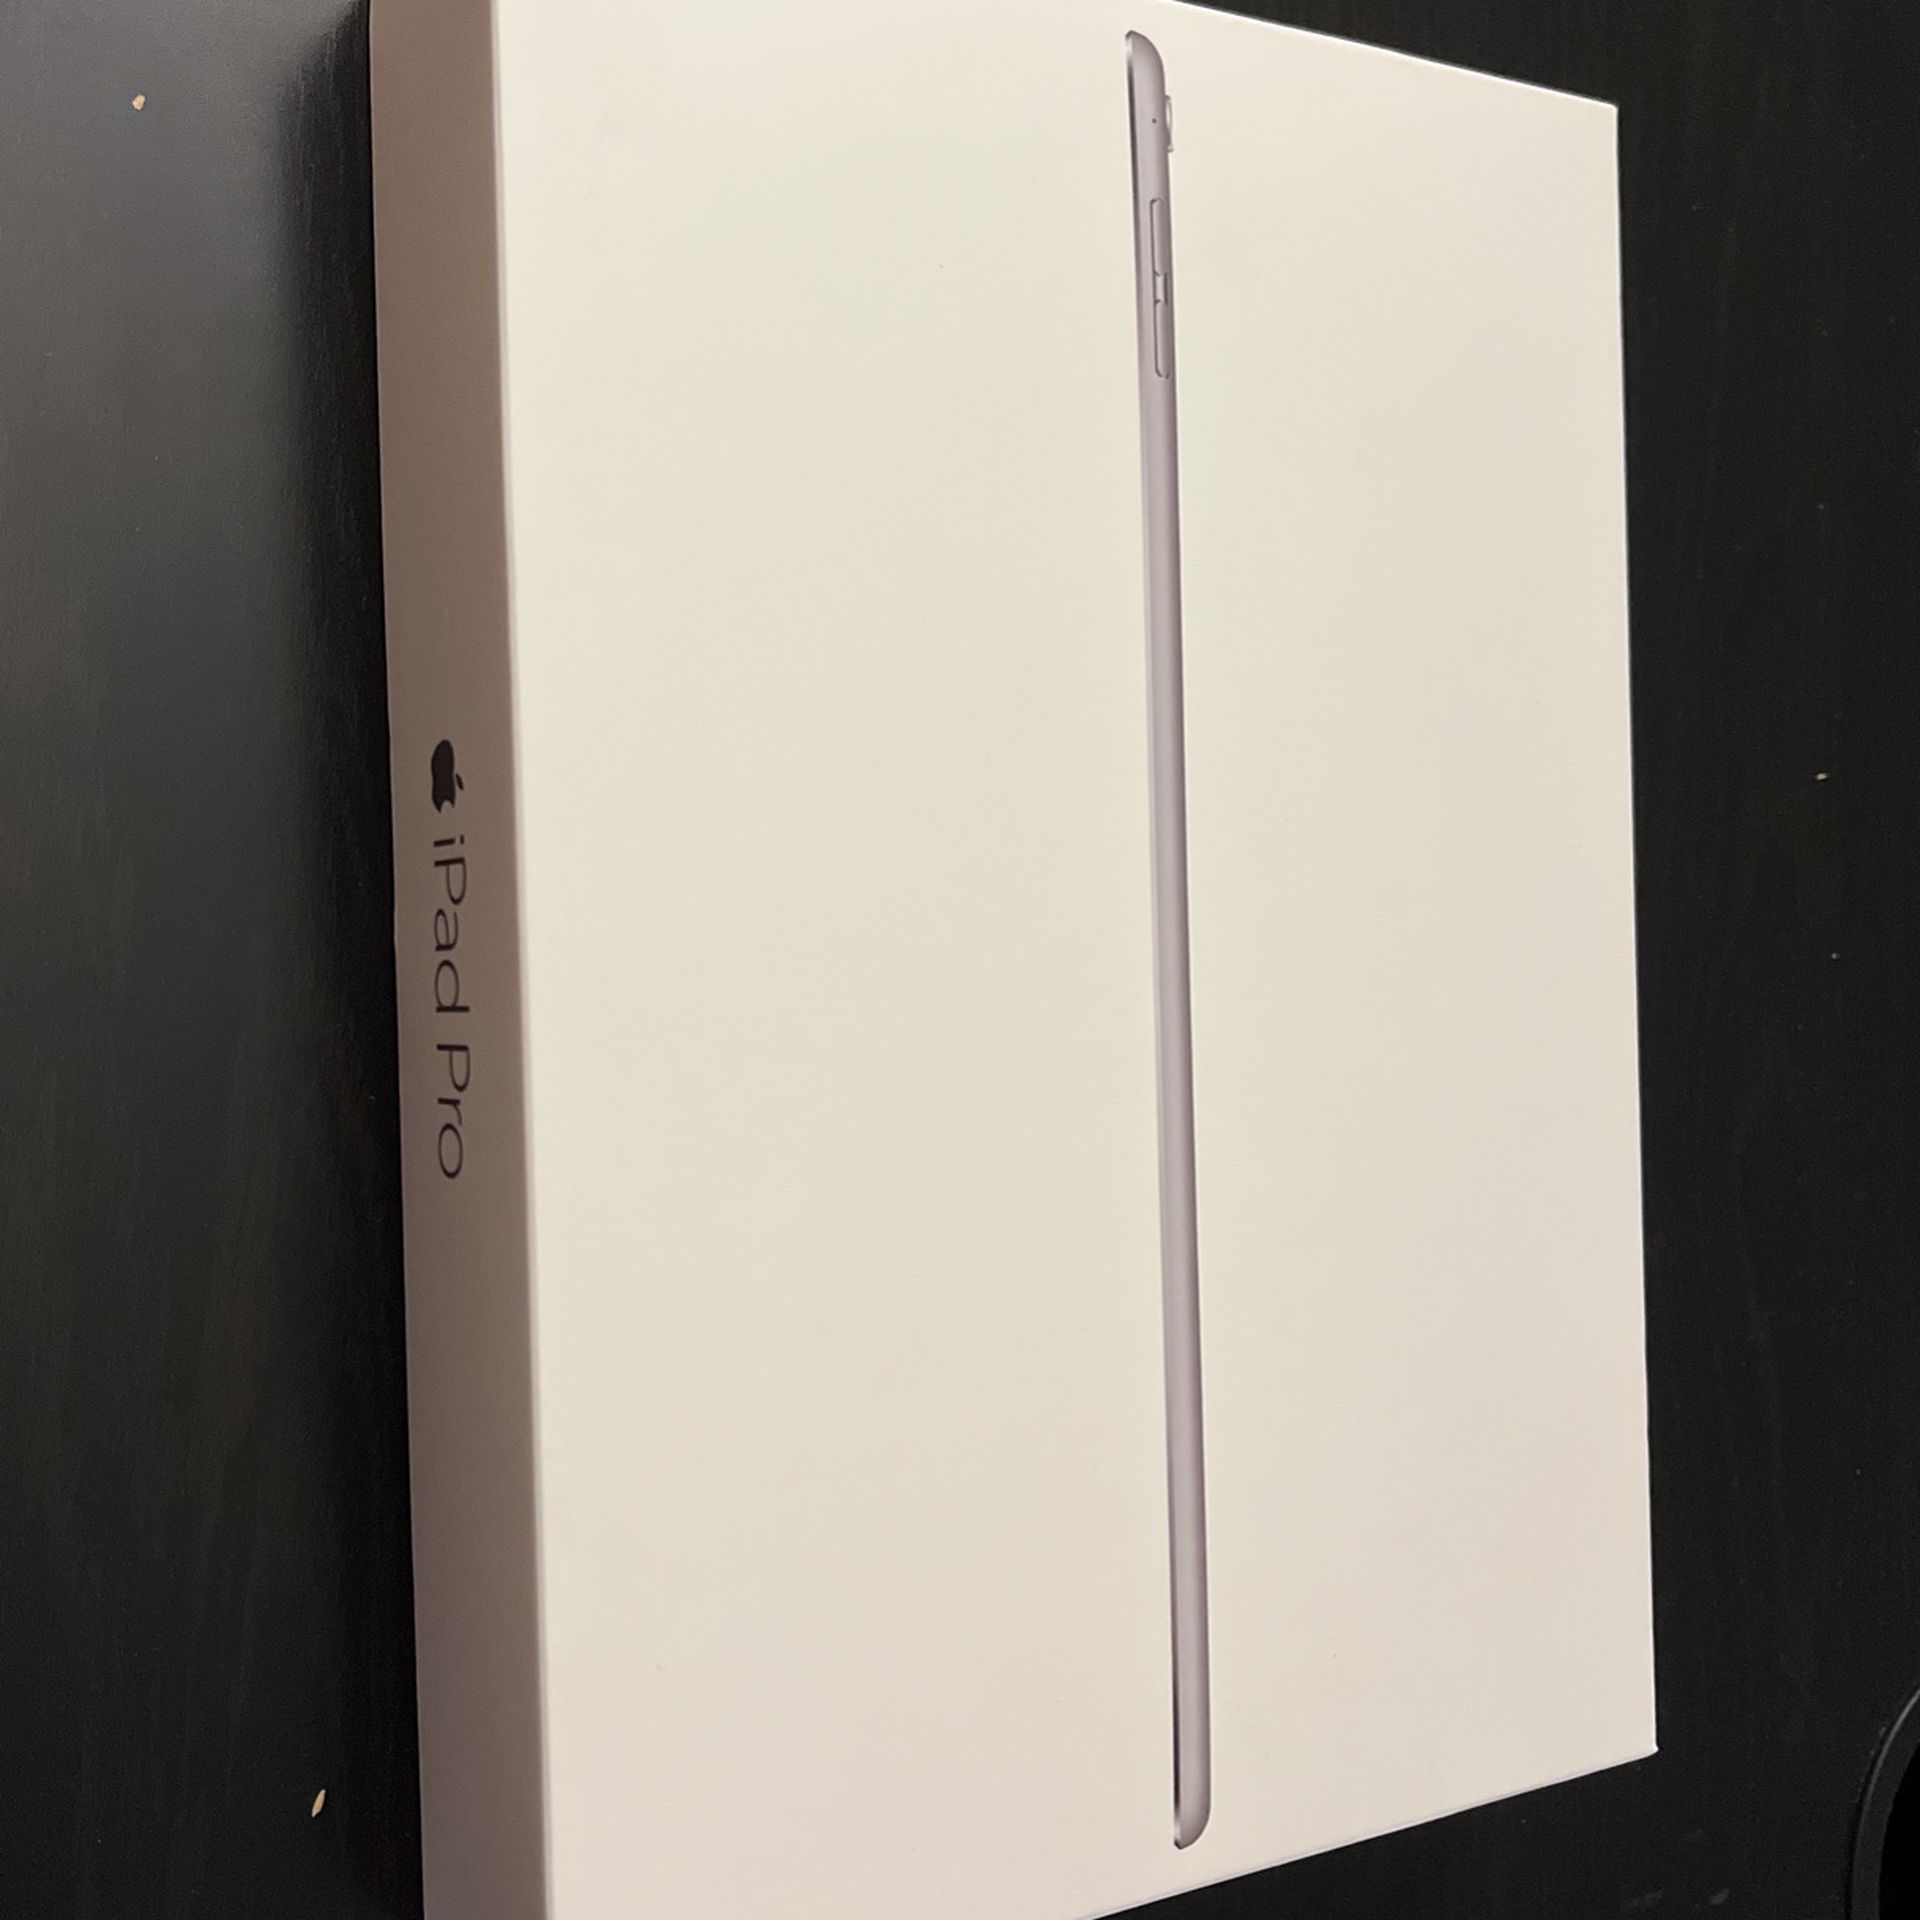 iPad Pro Empty Box